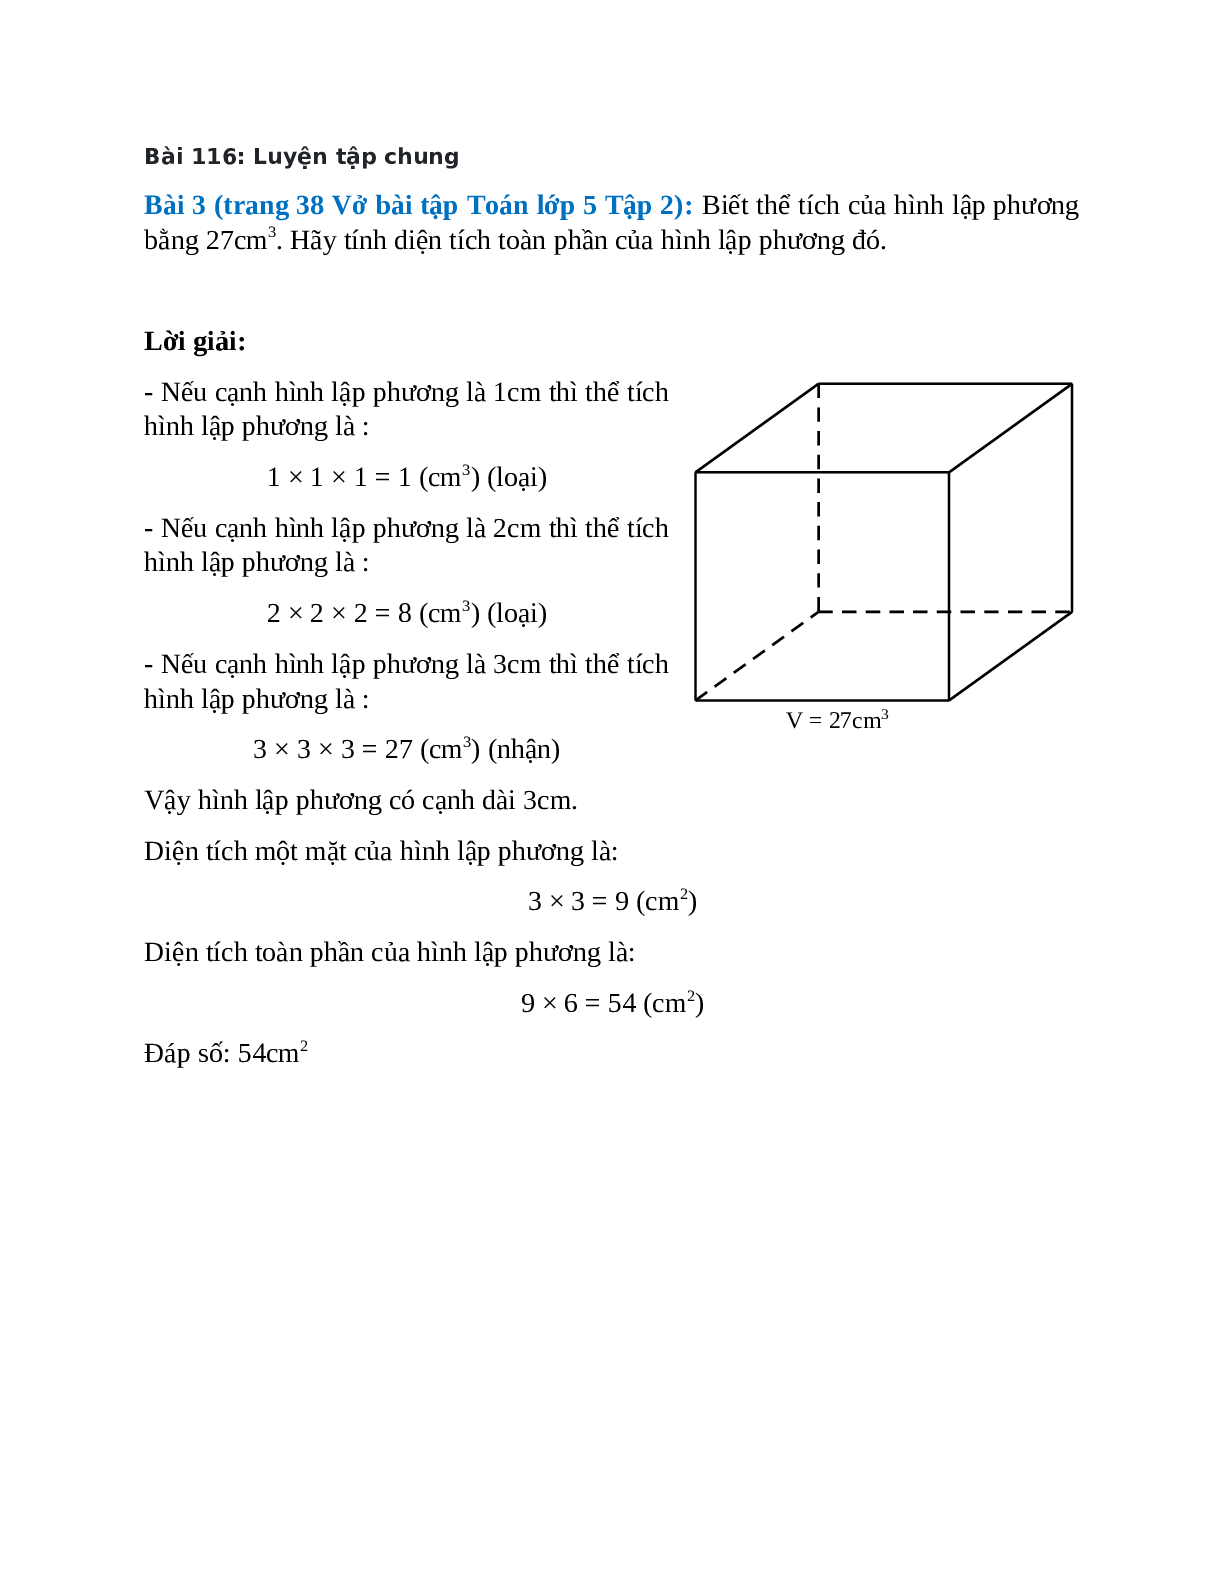 Biết thể tích của hình lập phương bằng 27cm3. Hãy tính diện tích toàn phần của hình lập phương đó (trang 1)